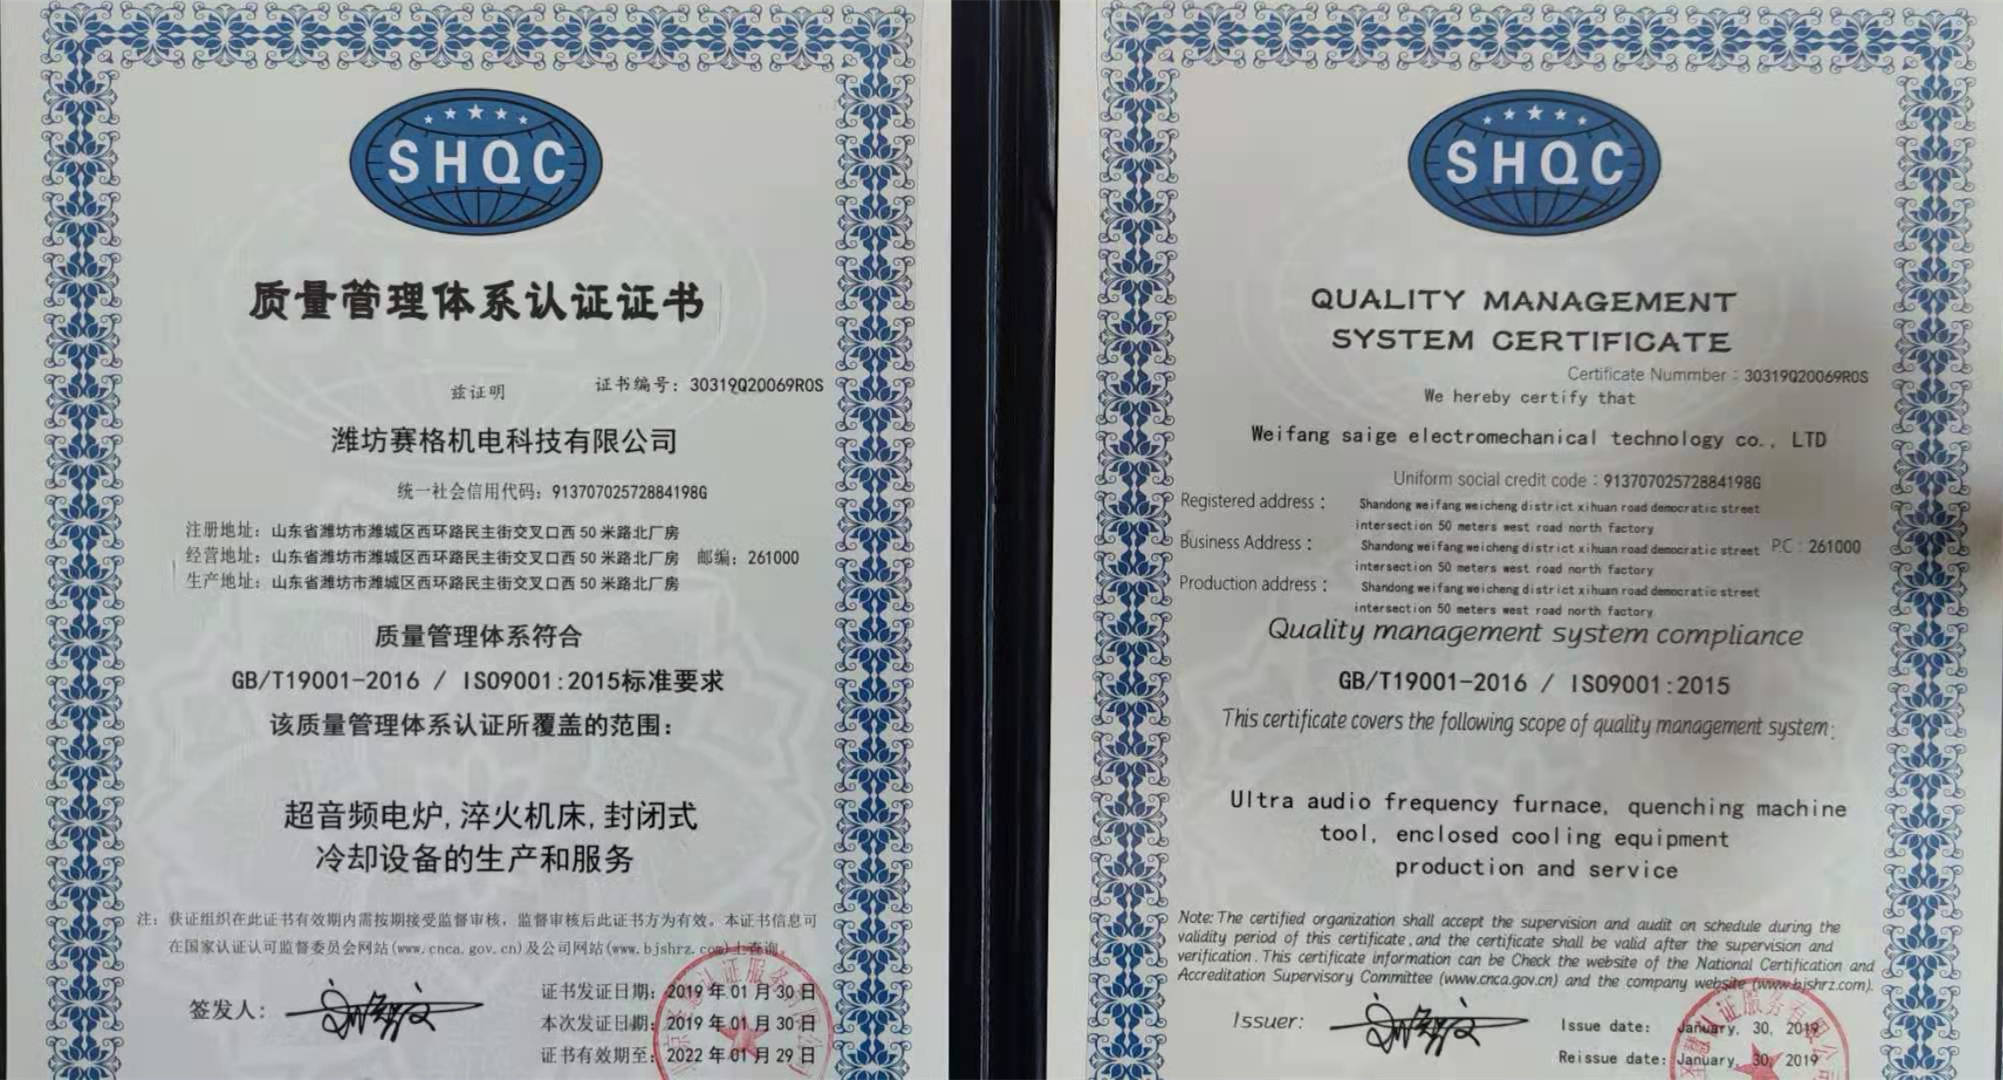 公司通过ISO质量管理体系认证